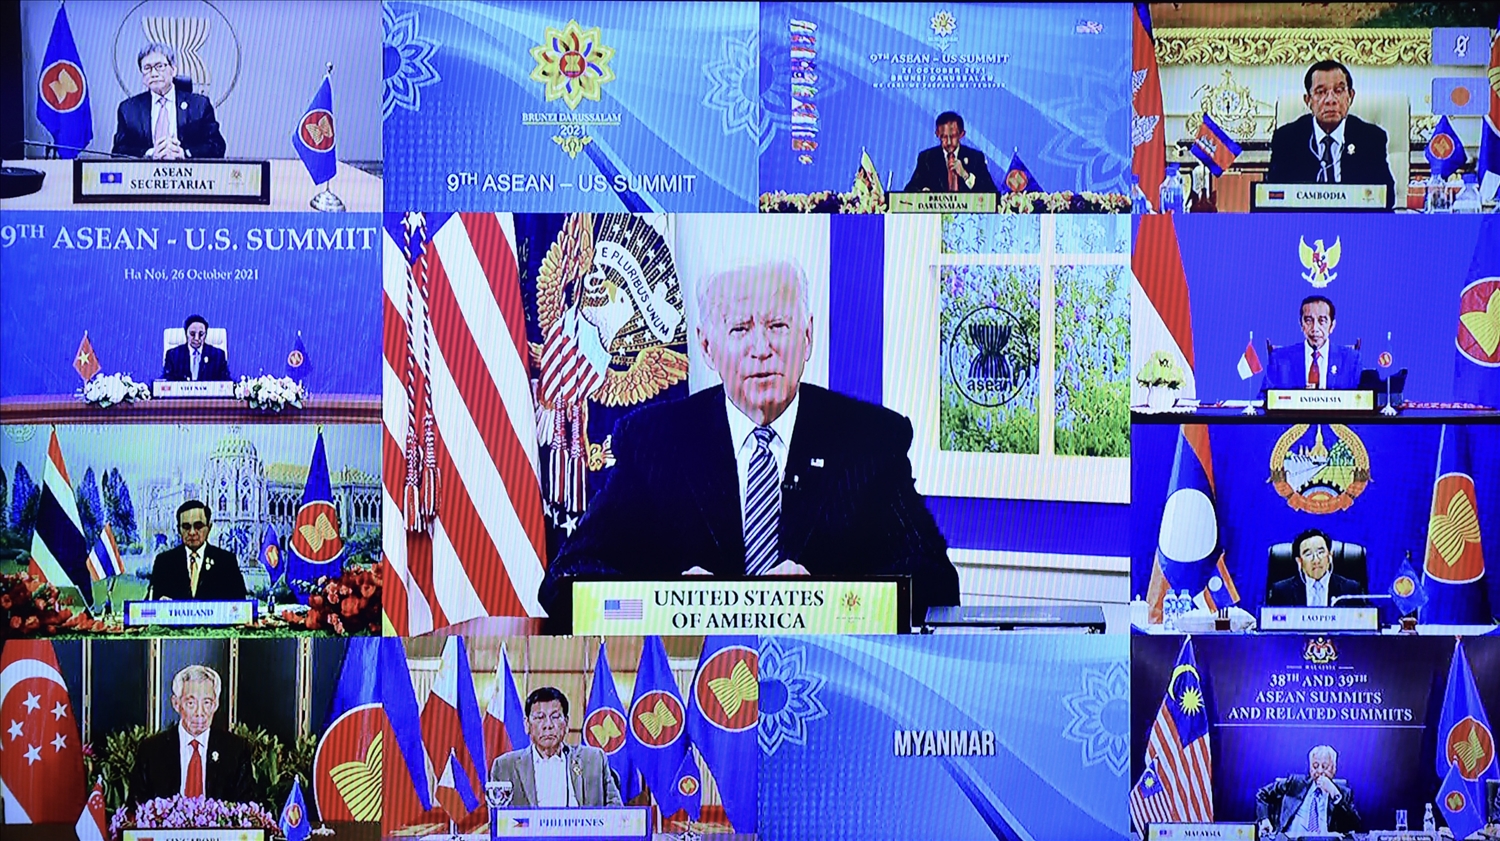 Tổng thống Hoa Kỳ Joe Biden khẳng định cam kết coi trọng quan hệ với ASEAN, nhấn mạnh quan hệ ASEAN-Hoa Kỳ có tầm quan trọng đặc biệt với tương lai của khu vực. Ảnh: VGP/Nhật Bắc